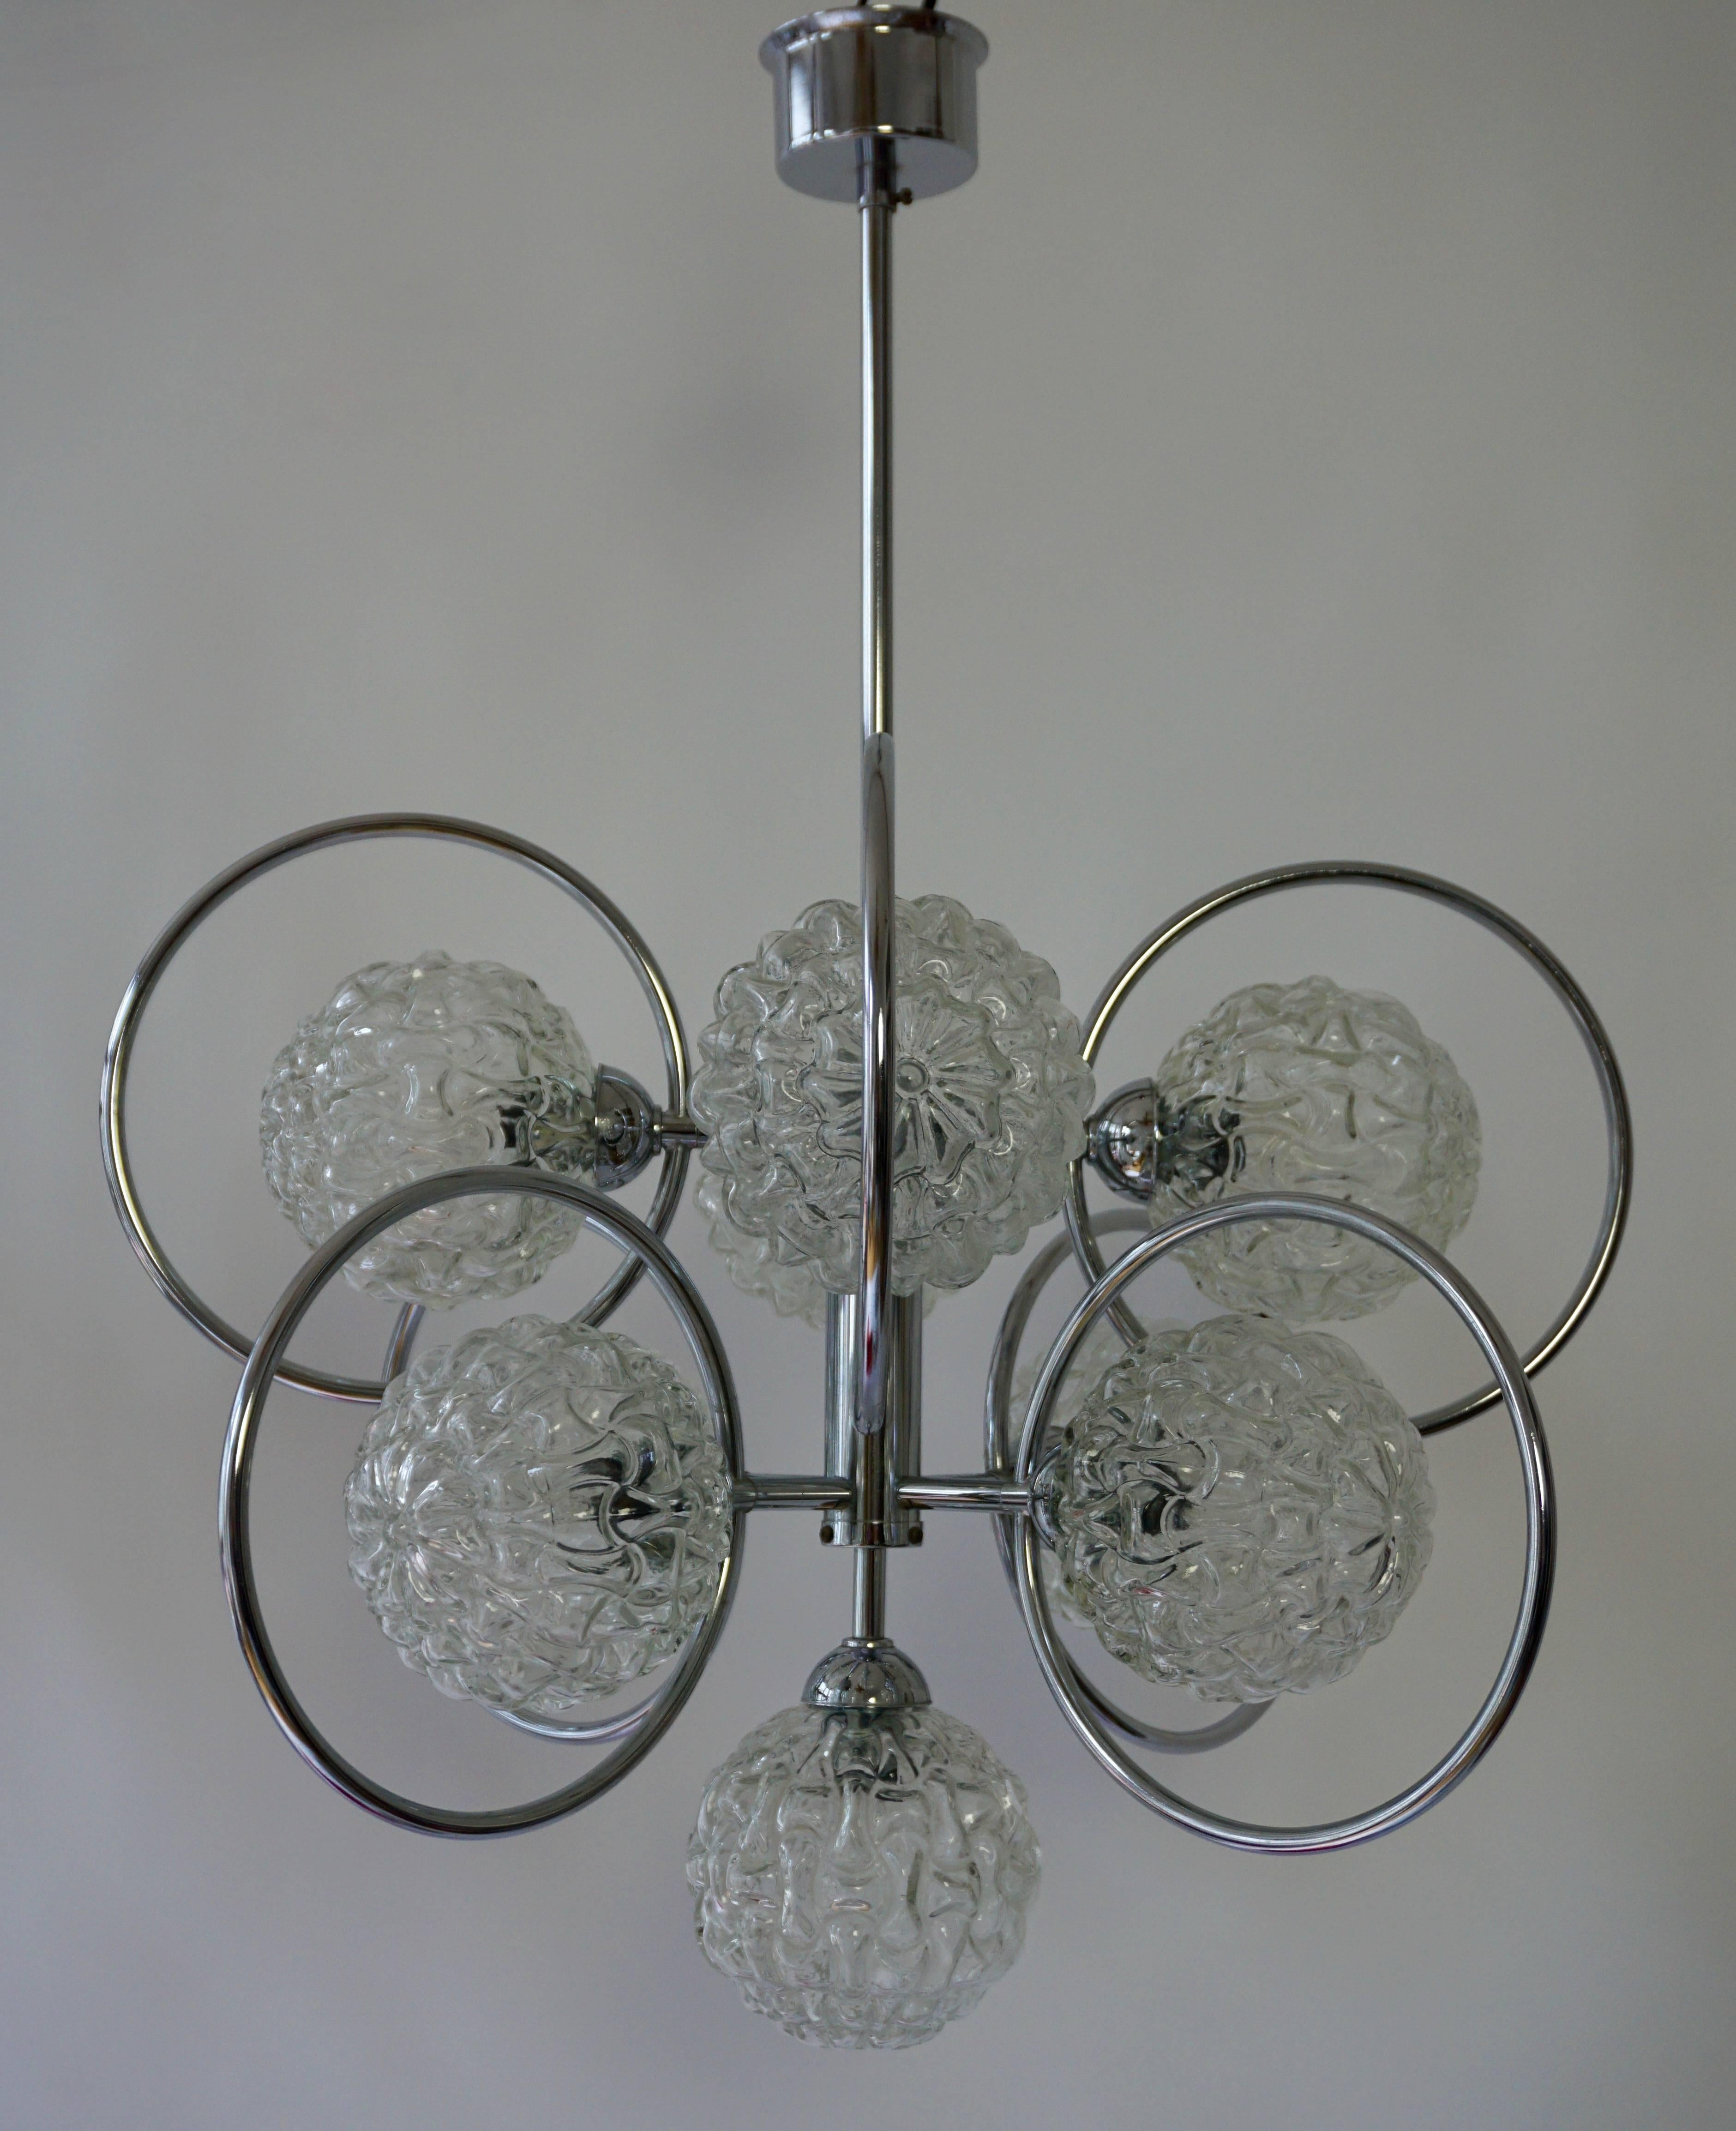 Italian Sputnik chandelier.
Diameter 60 cm.
Height 80 cm.
Nine E14 bulbs inside.